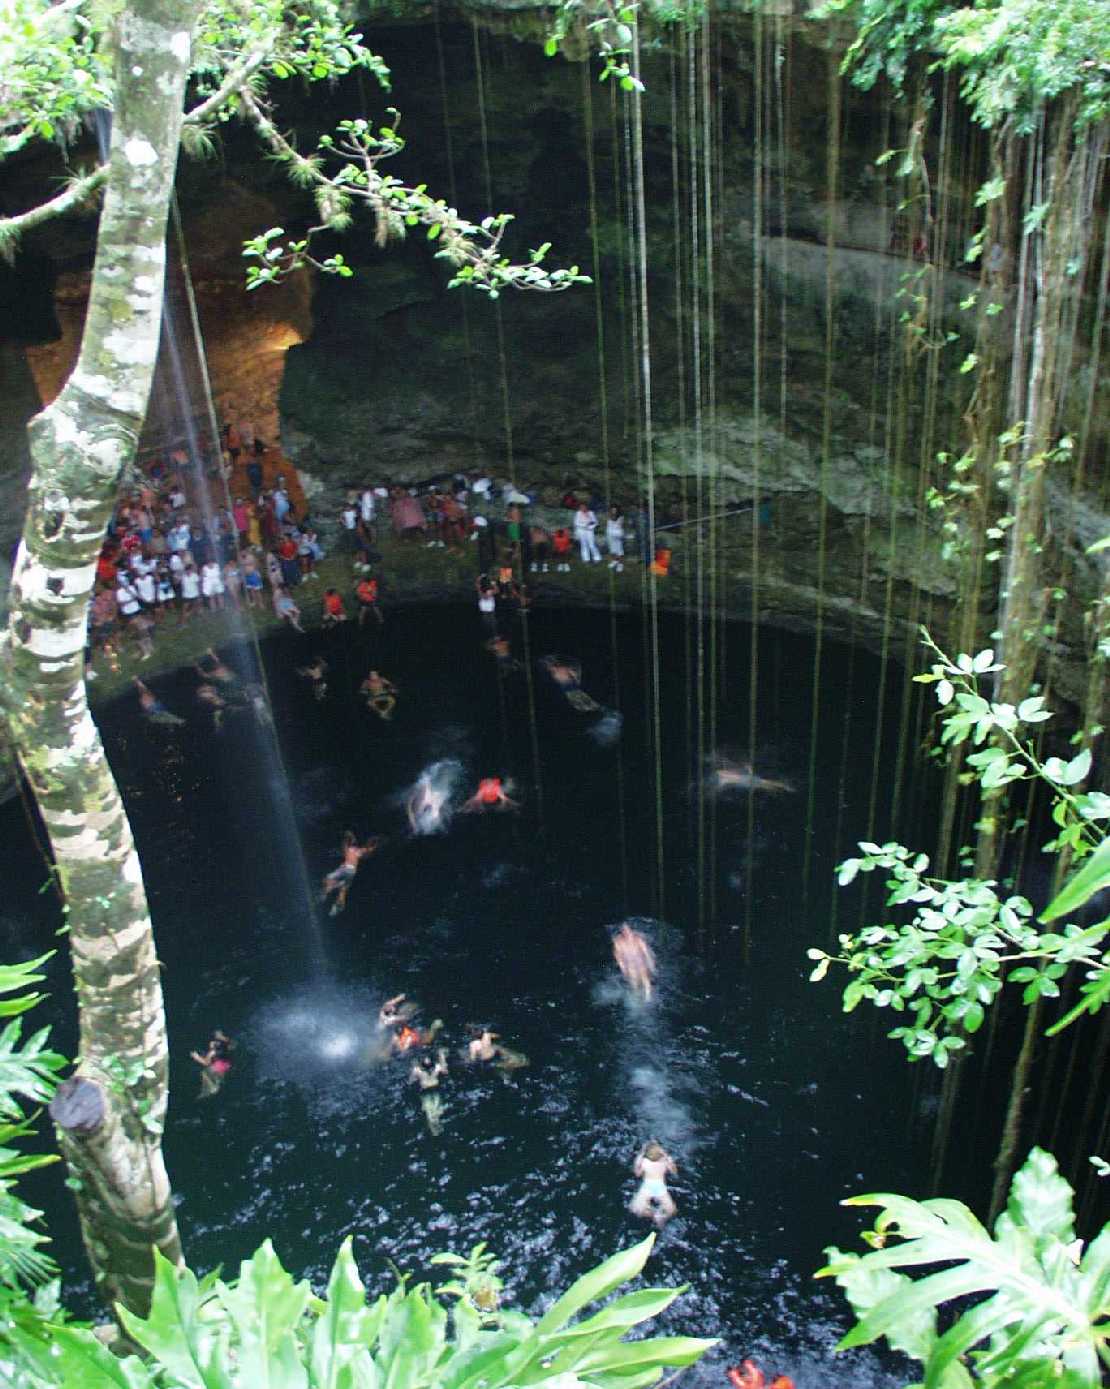 die Cenote, Opferplatz in Chichen Itza